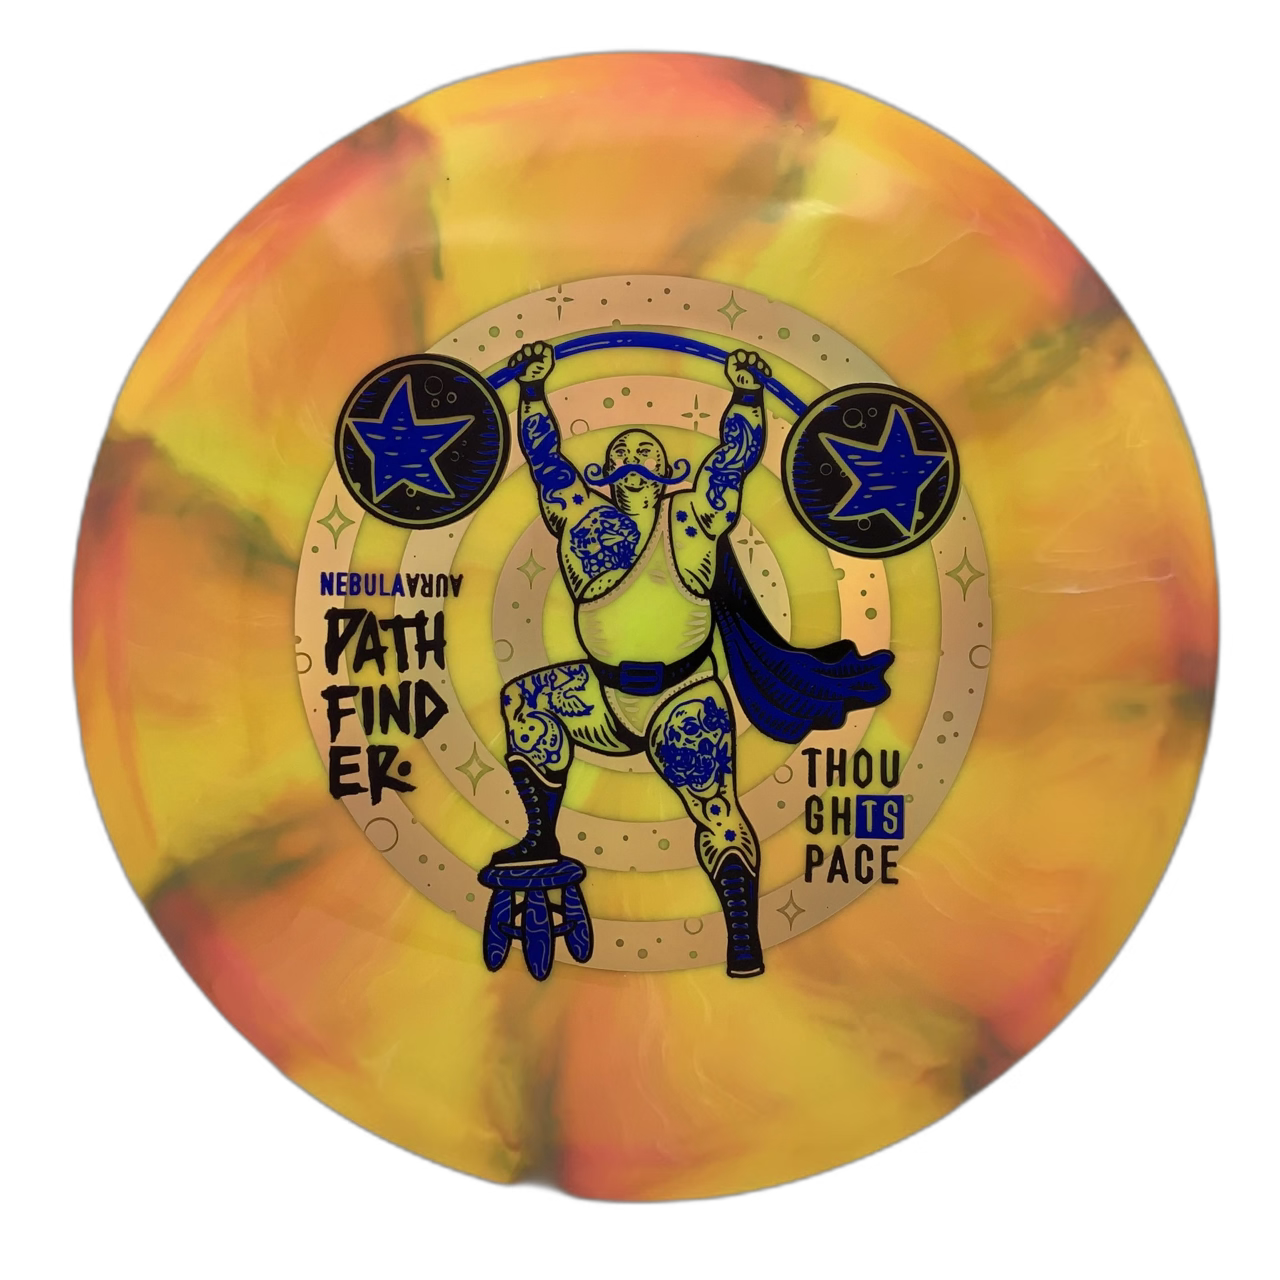 TSA Pathfinder - Astro Discs TX - Houston Disc Golf